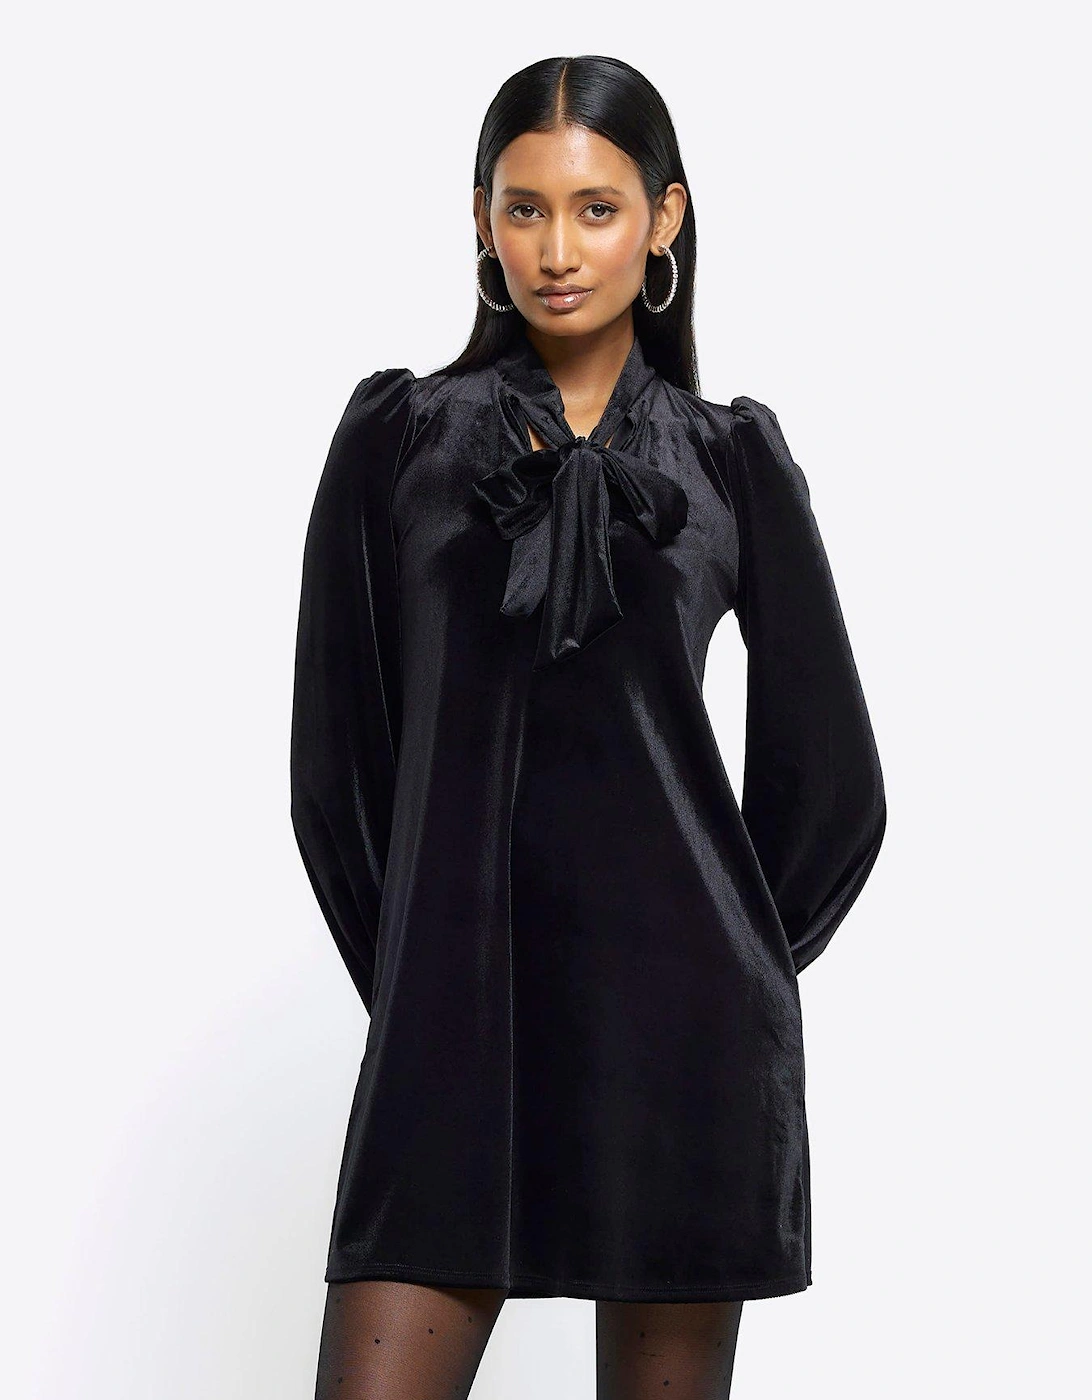 Velvet Fringe Mini Dress - Black, 6 of 5